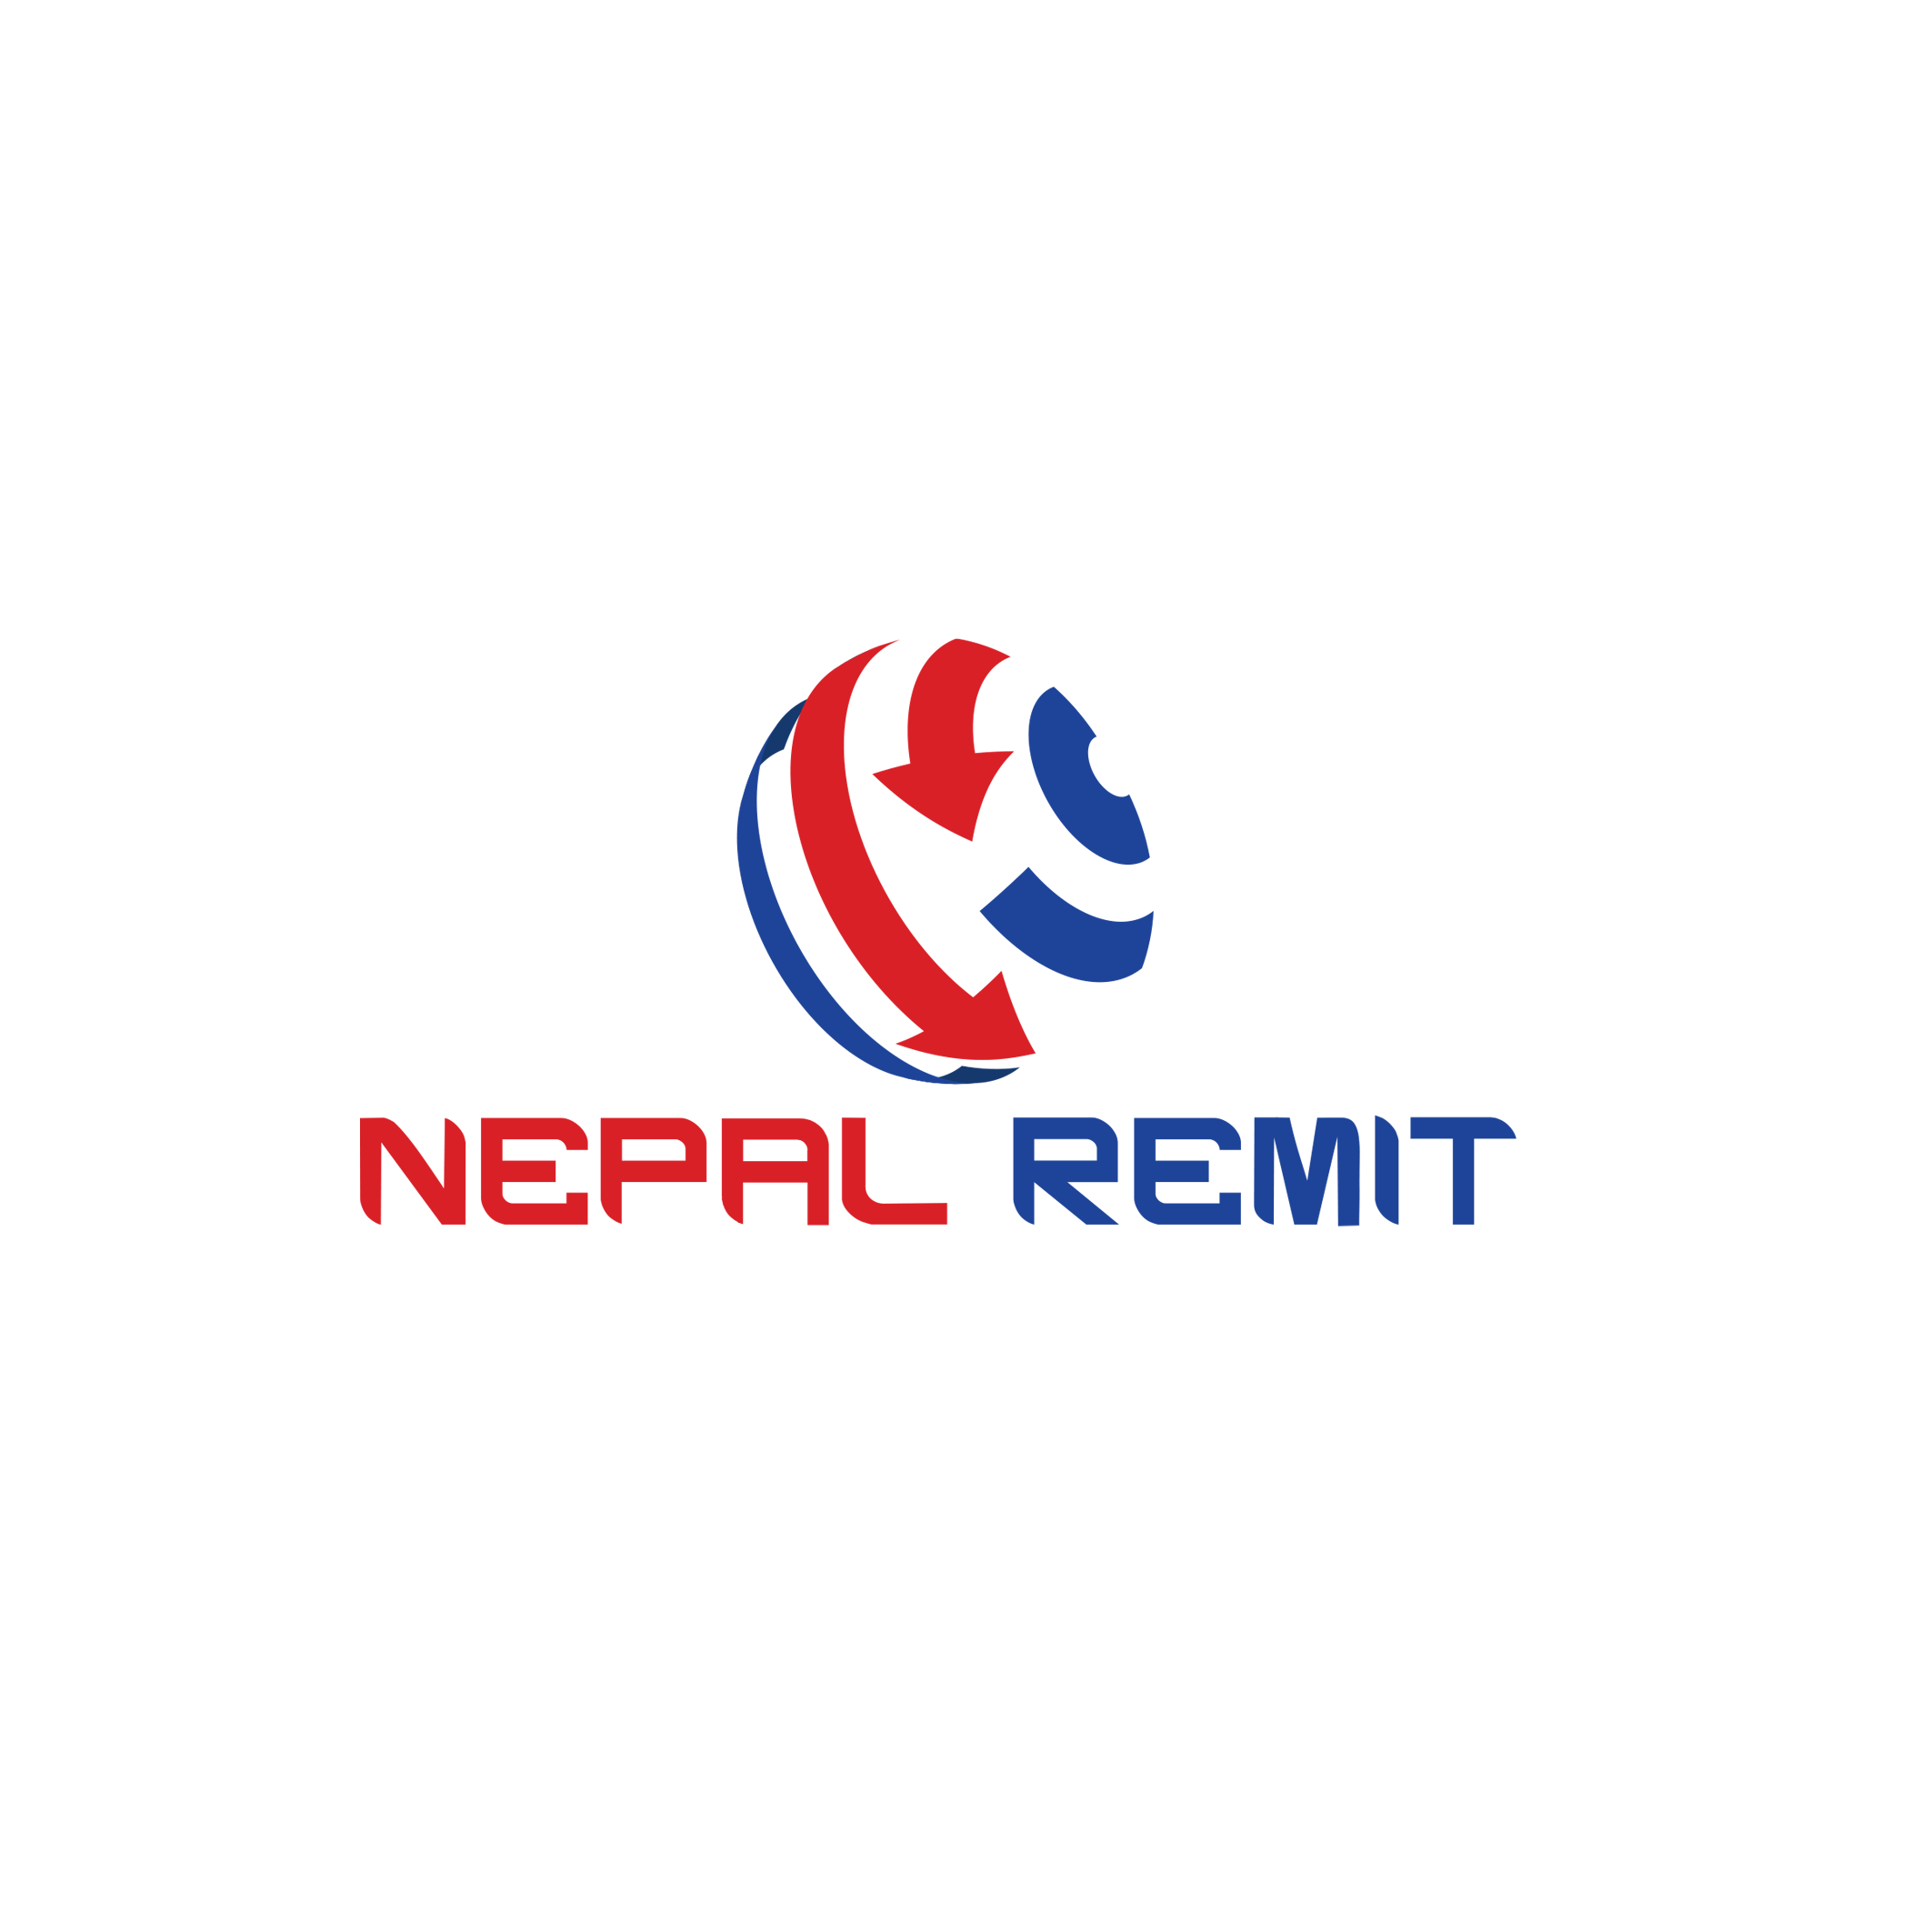 Nepal Remit